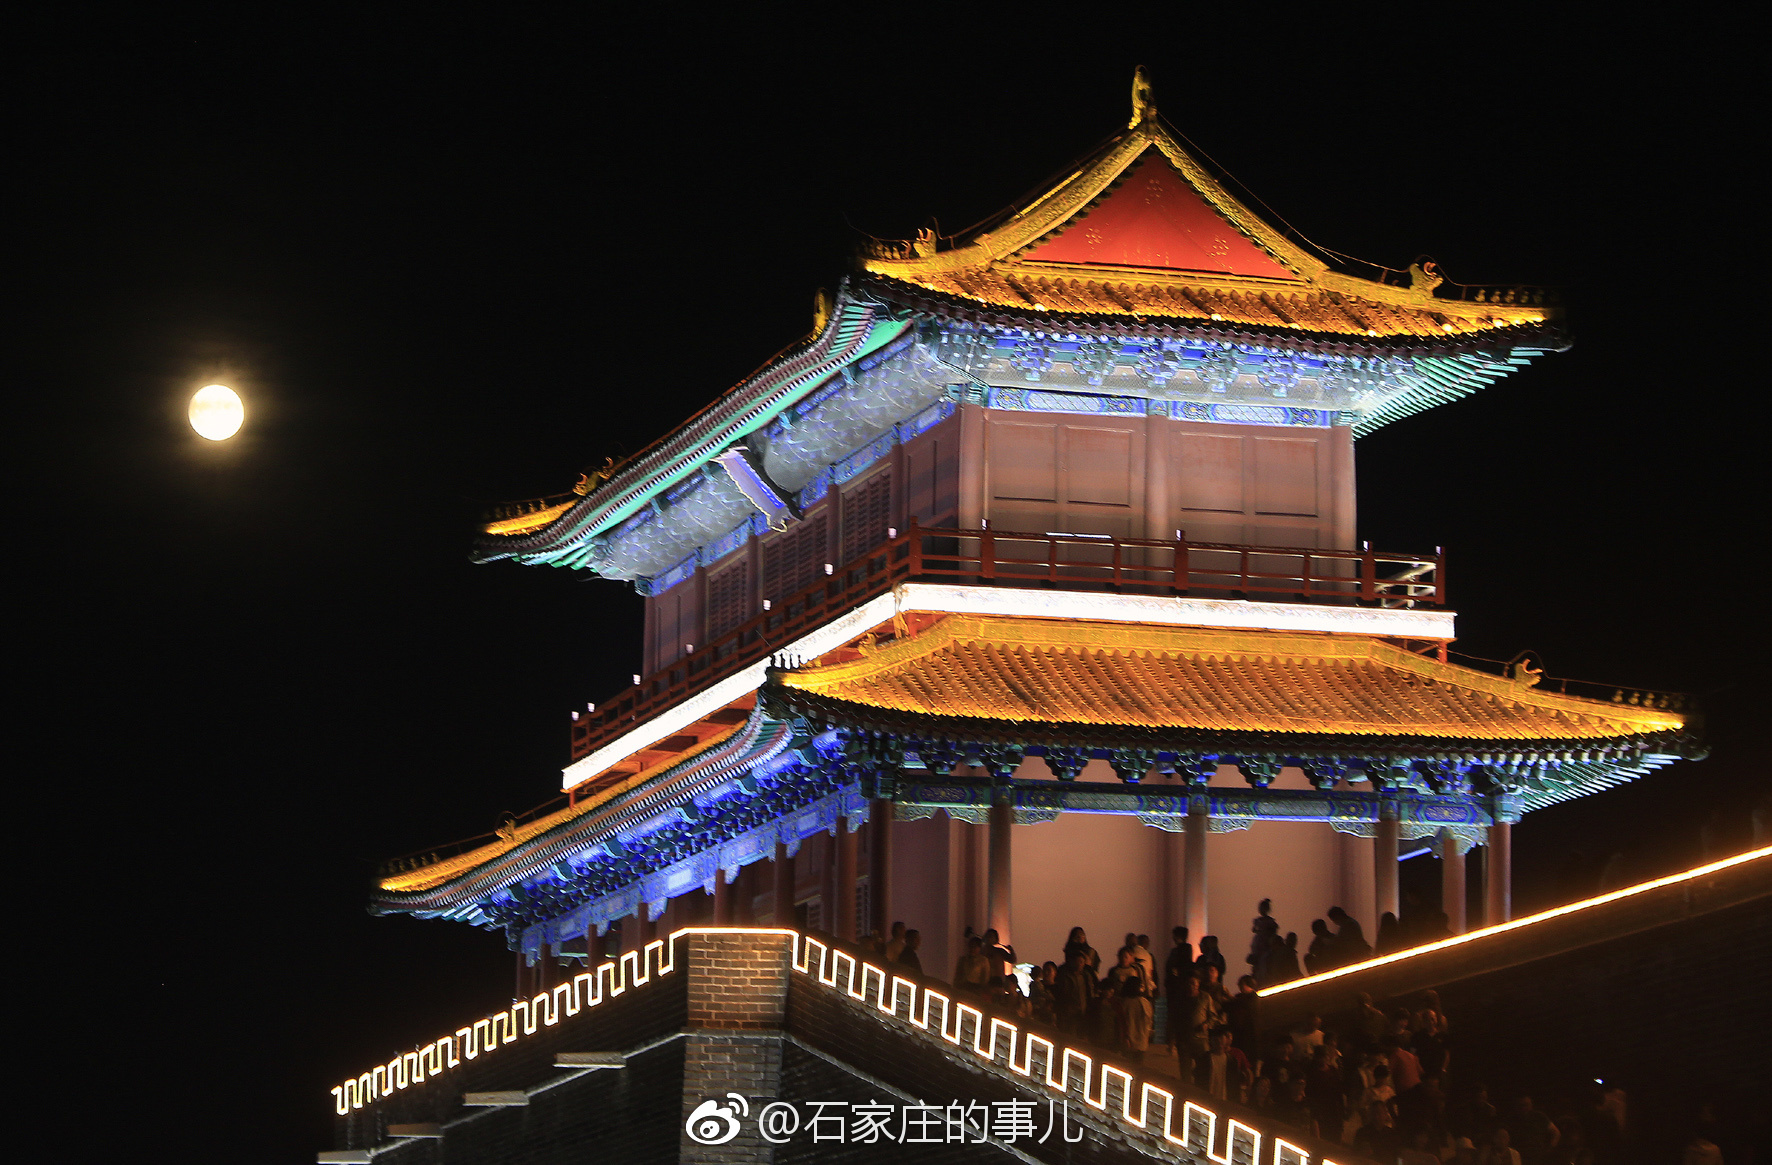 9月24日中秋节当晚拍摄的正定古城,古城灯光璀璨